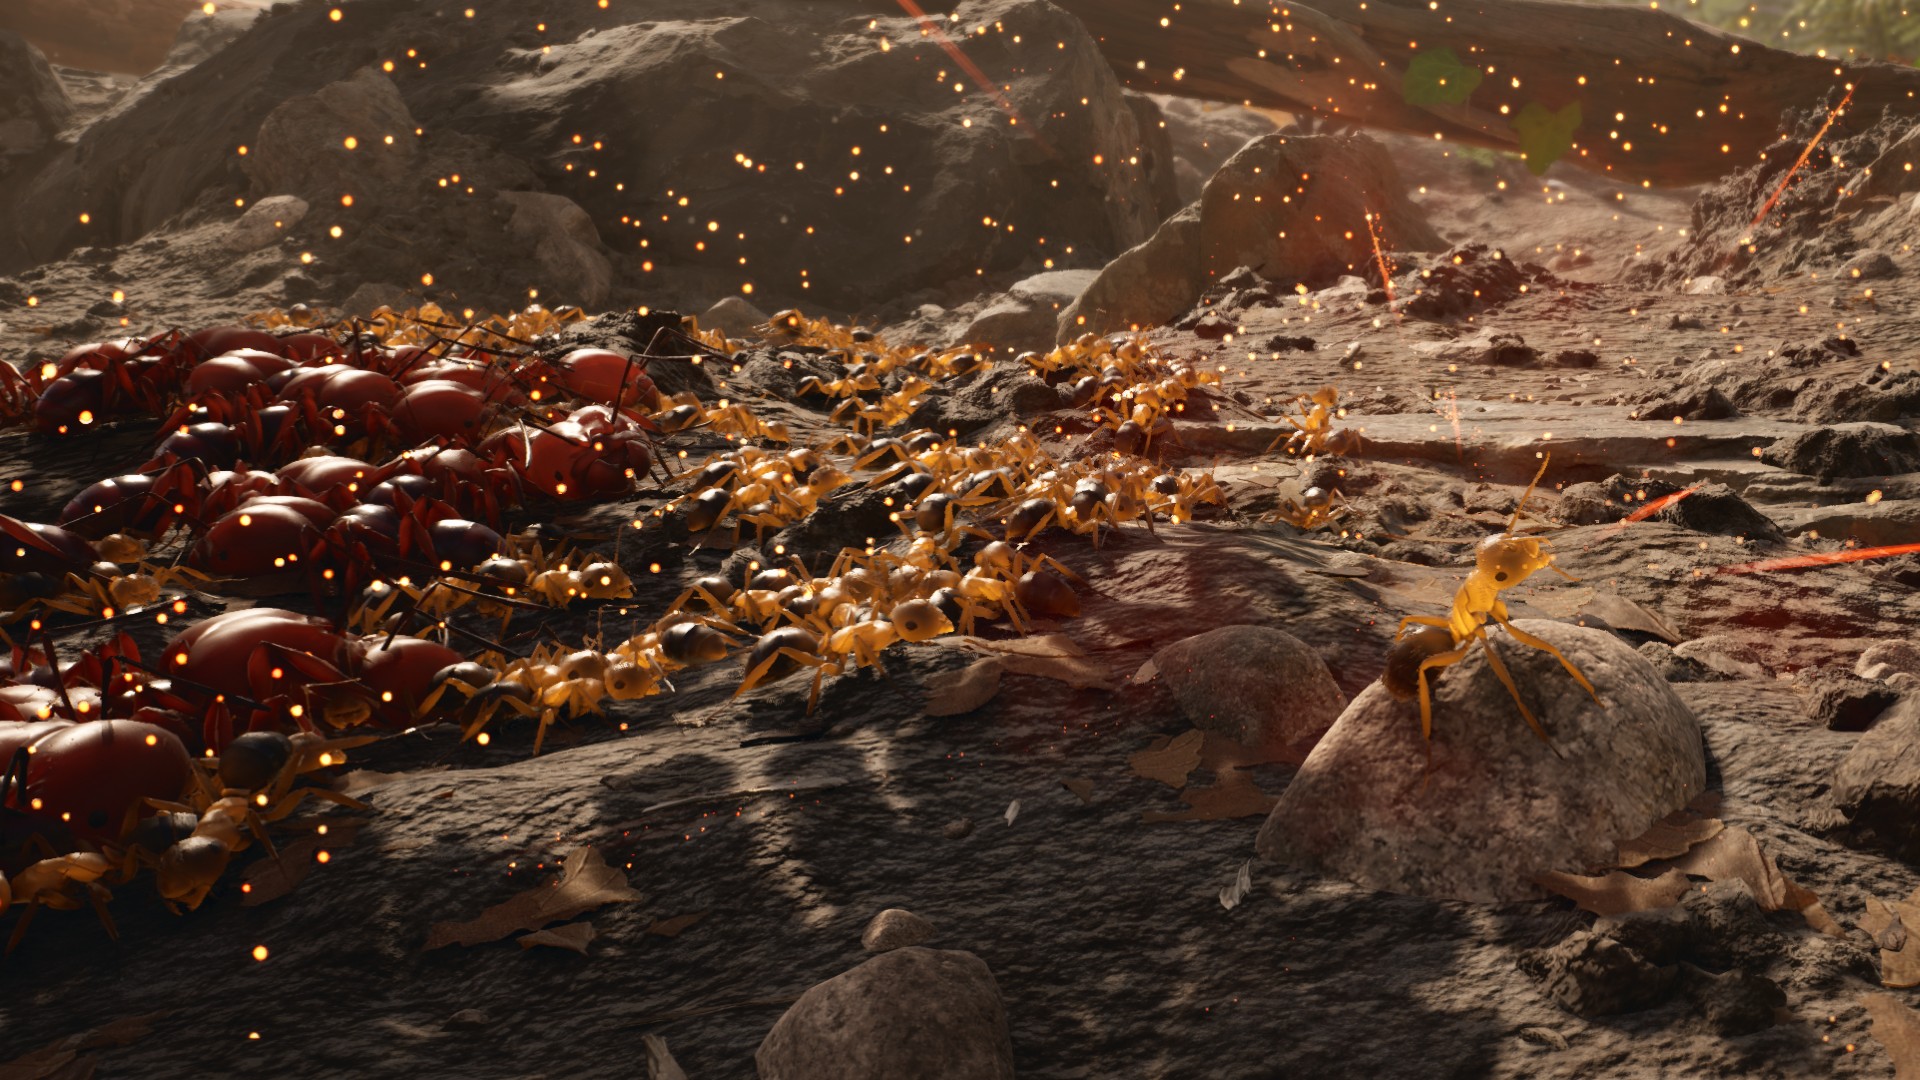 Juego de estrategia en tiempo real Empire of the Ants: una hormiga que lidera una batalla en el nuevo juego de estrategia en tiempo real Empire of the Ants